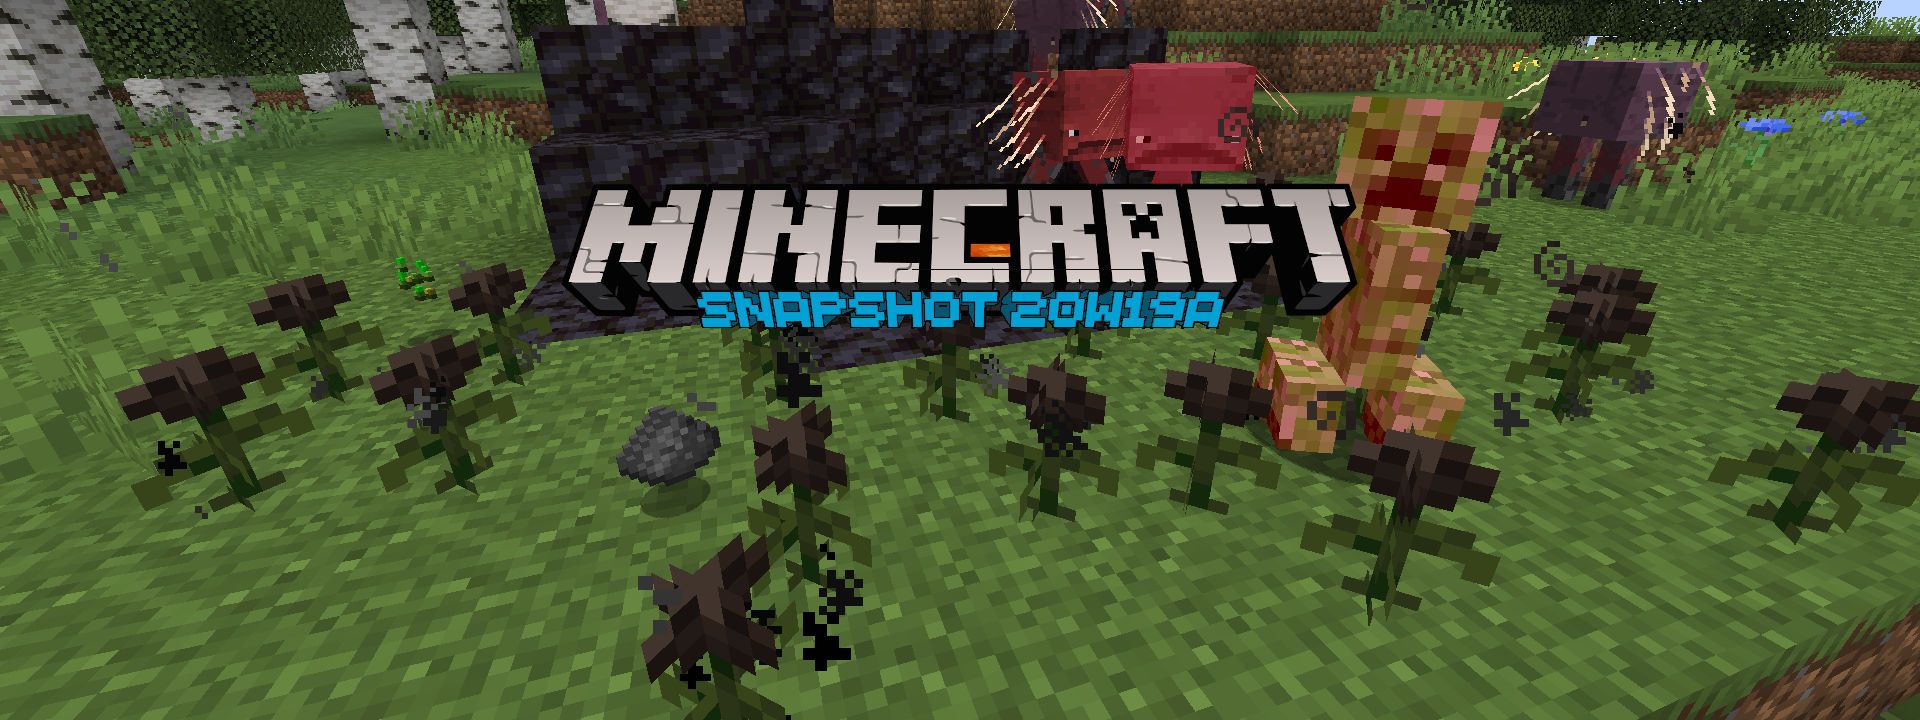 Minecraft Snapshot 20w19a